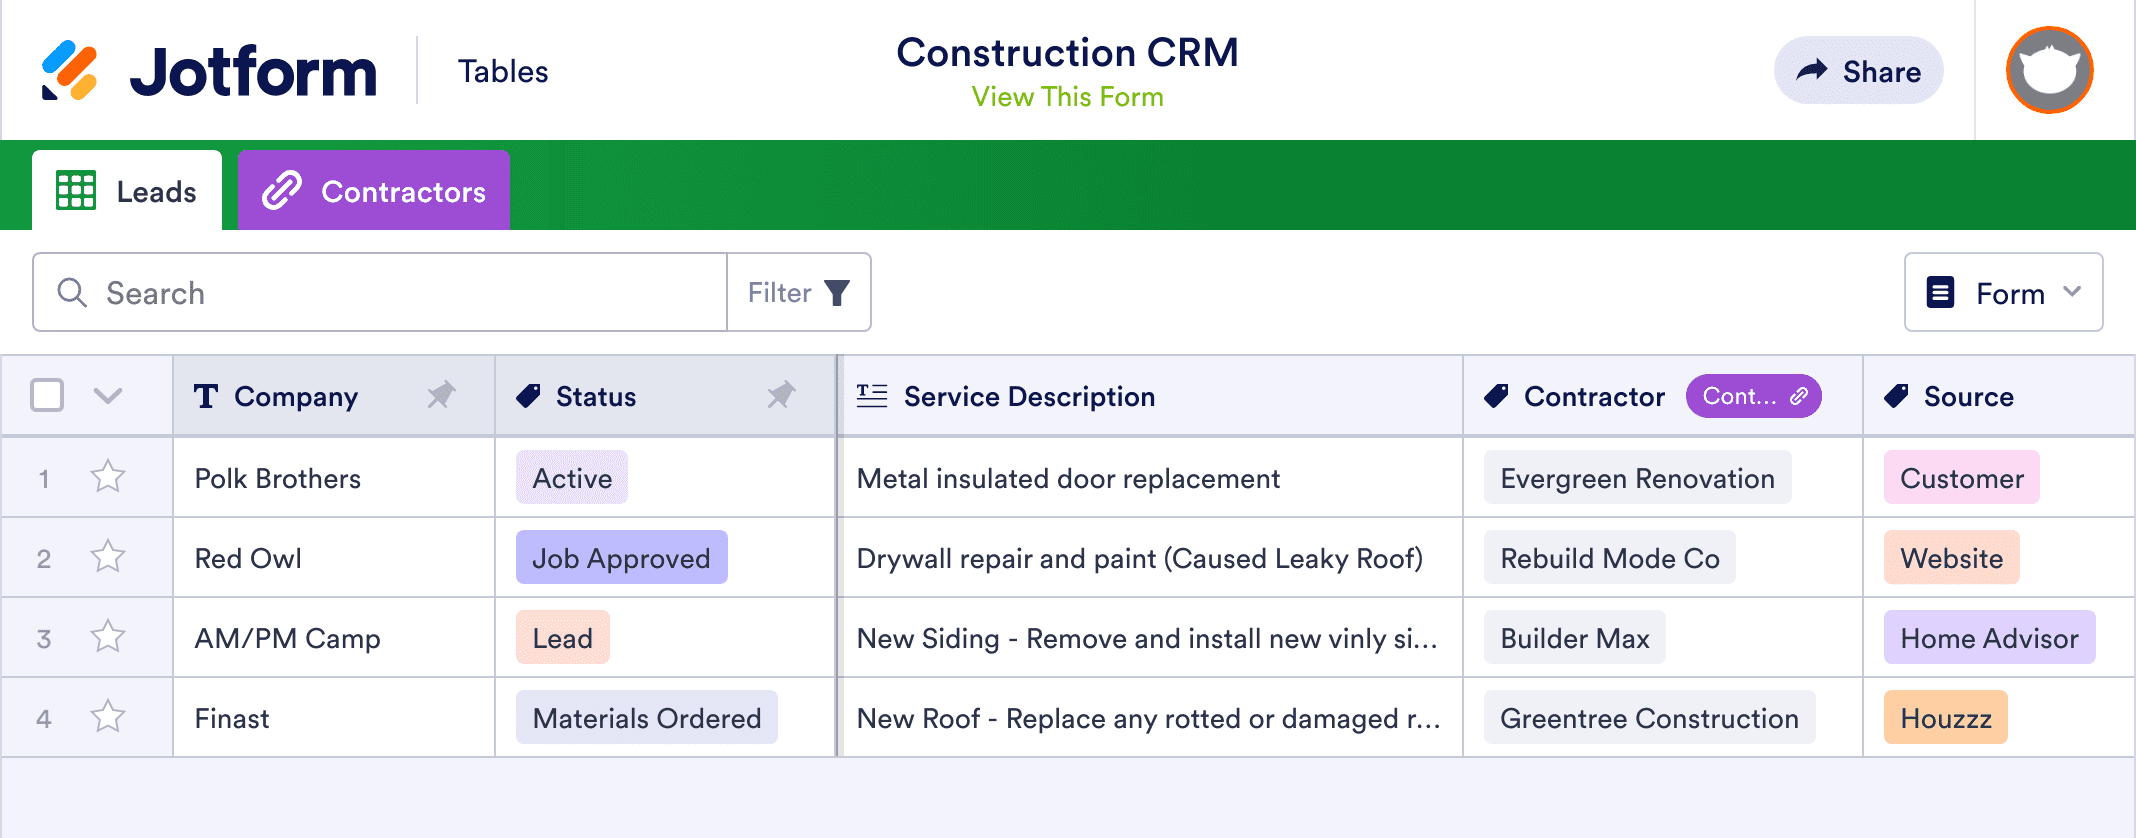 Construction CRM Template | Jotform Tables